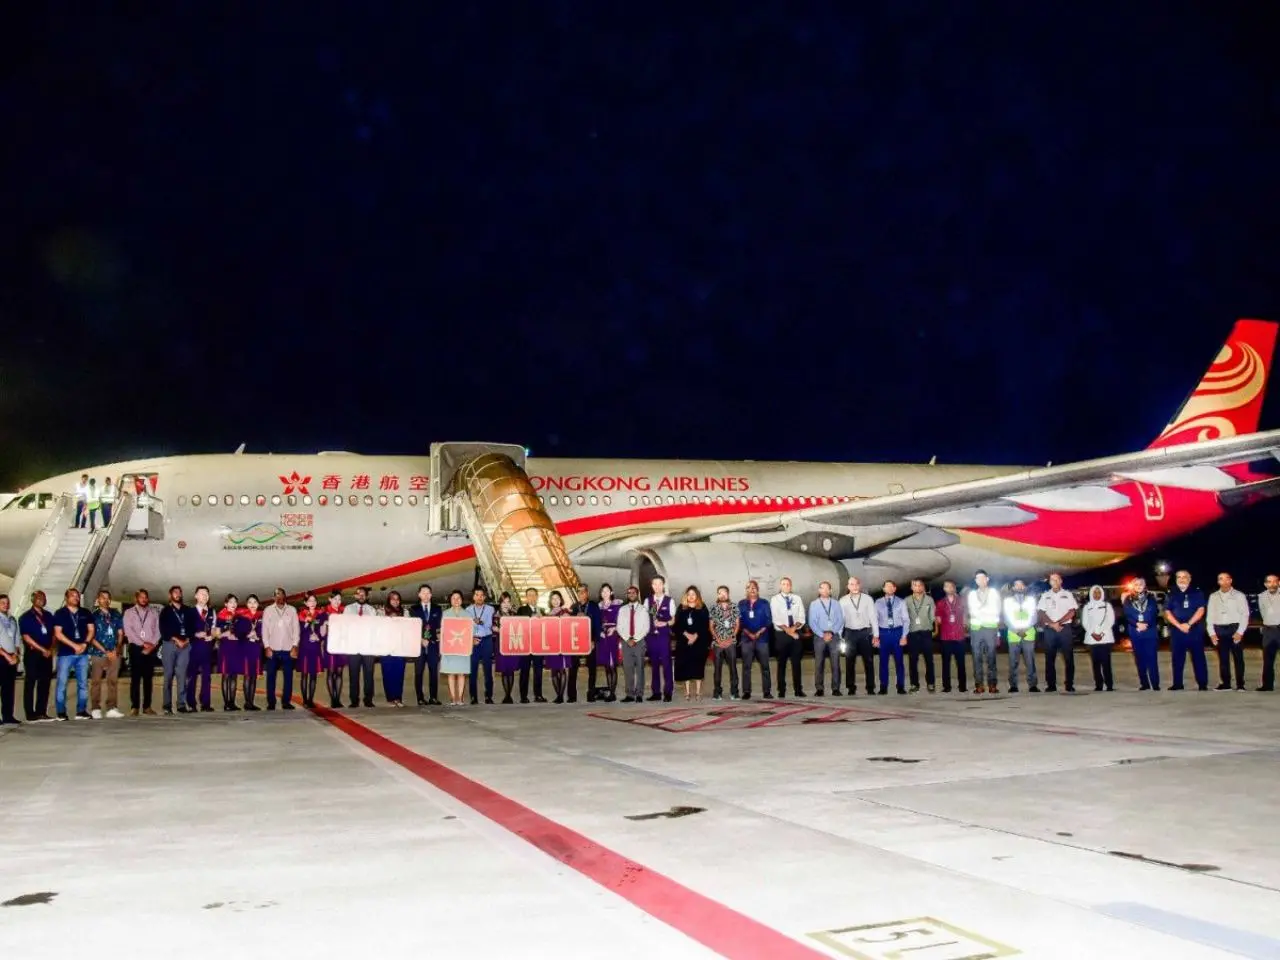 Hong Kong Airlines returns to Maldives